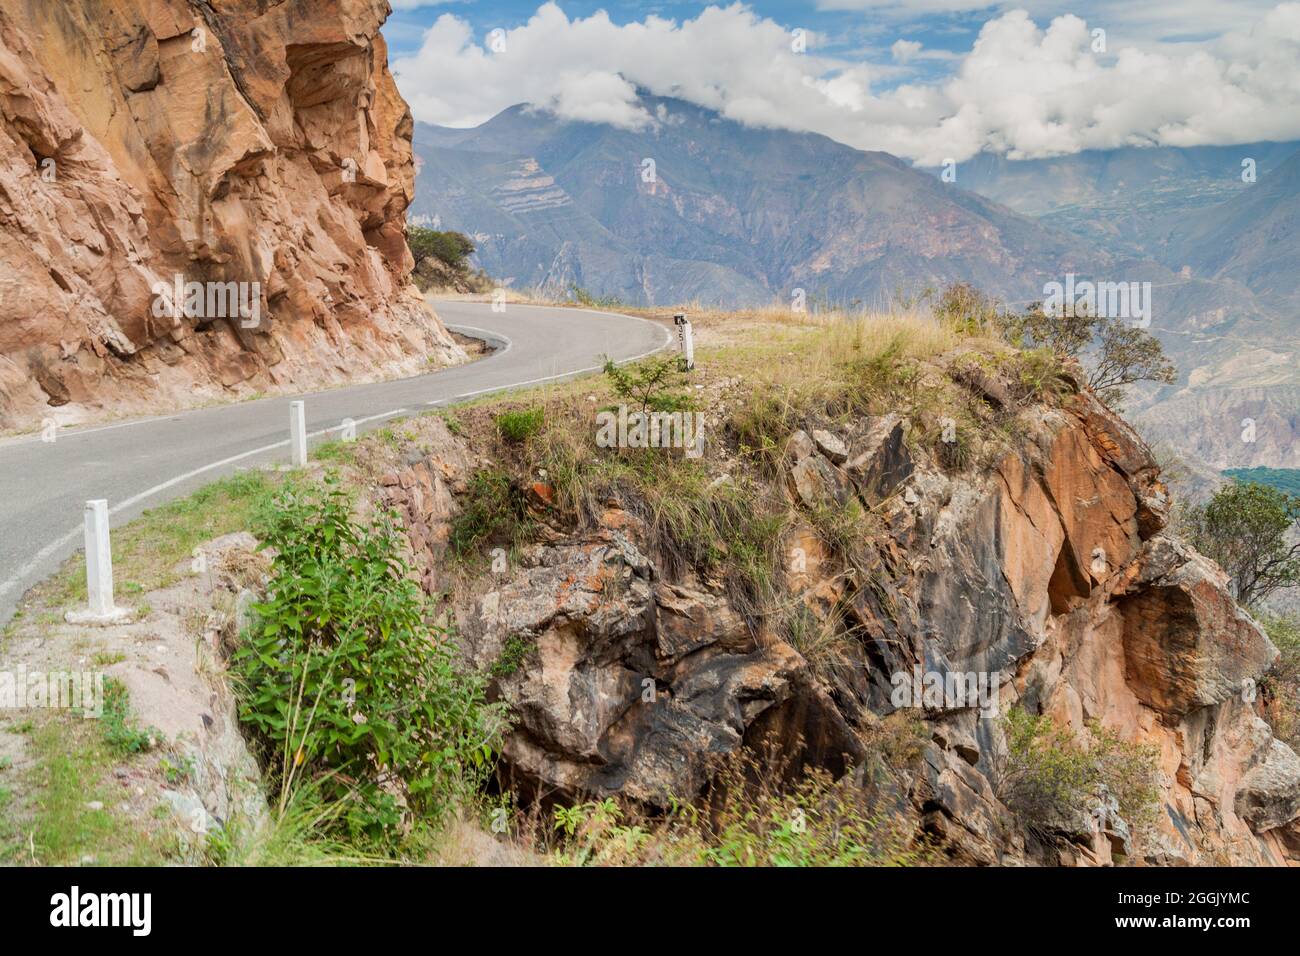 Mountain road between Balsas and Leimebamba, Peru. Stock Photo